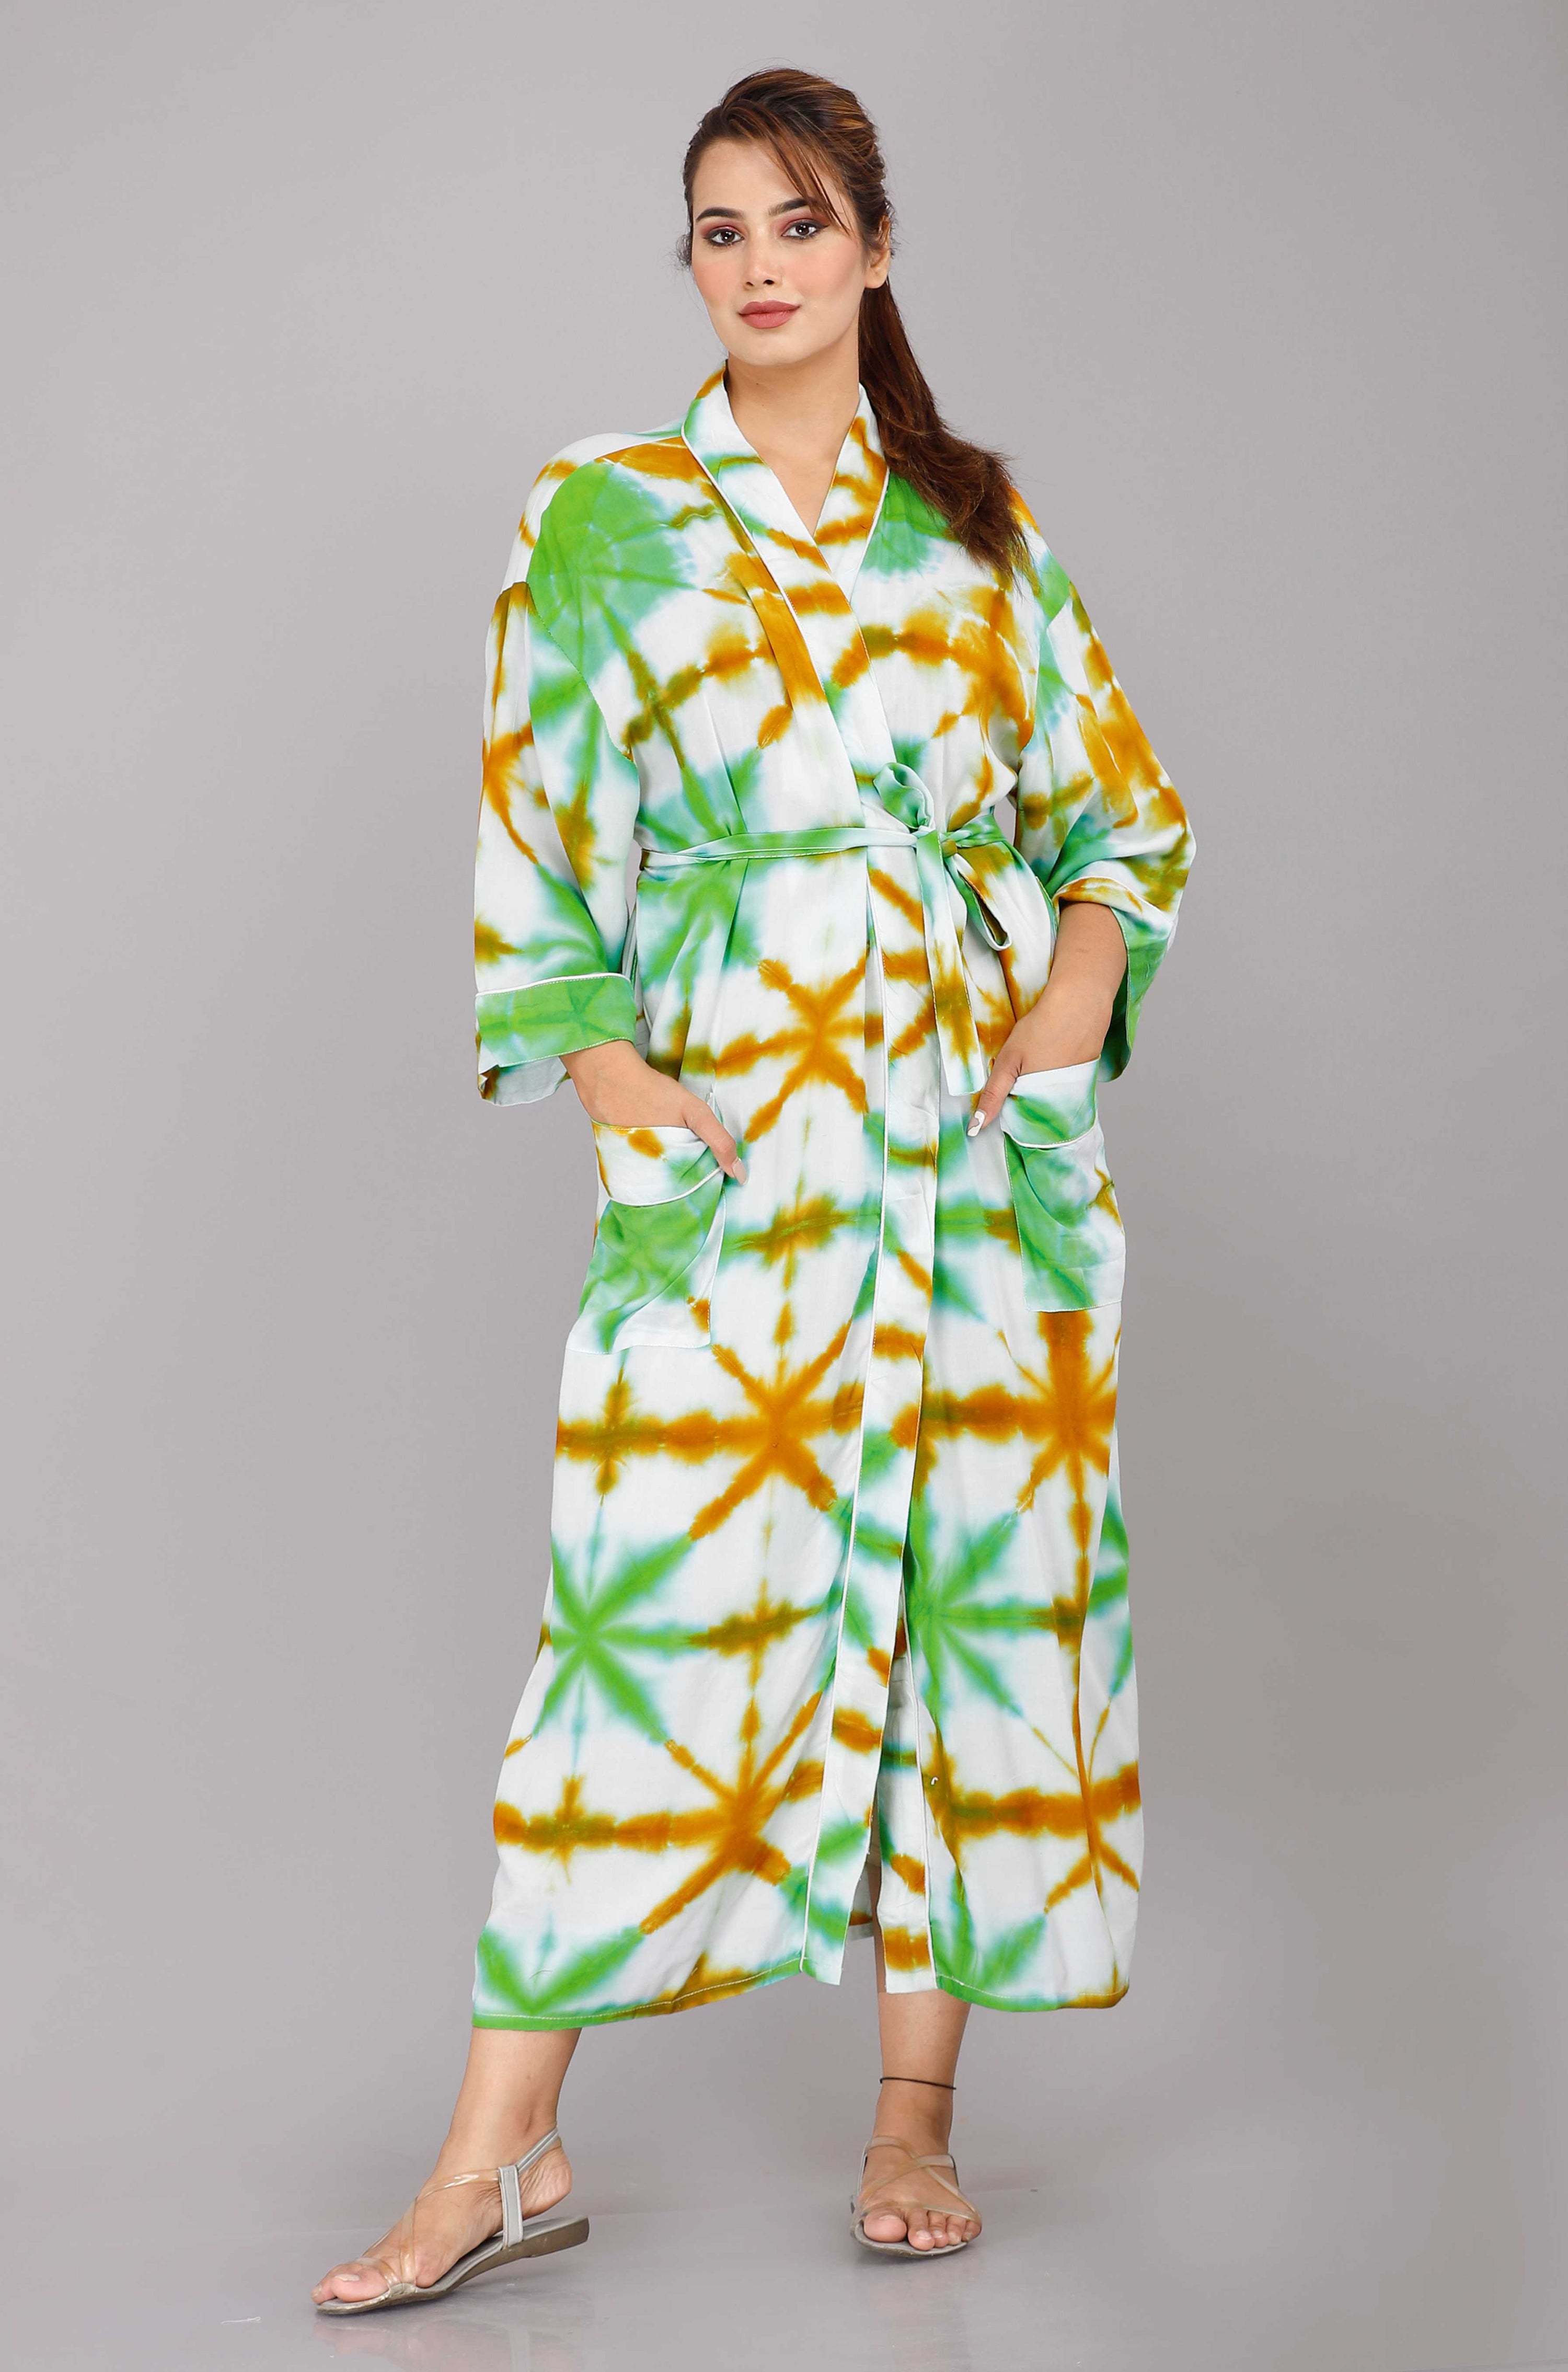 Tie Dye Pattern Kimono Robe Long Bathrobe For Women (Green)-KM-51